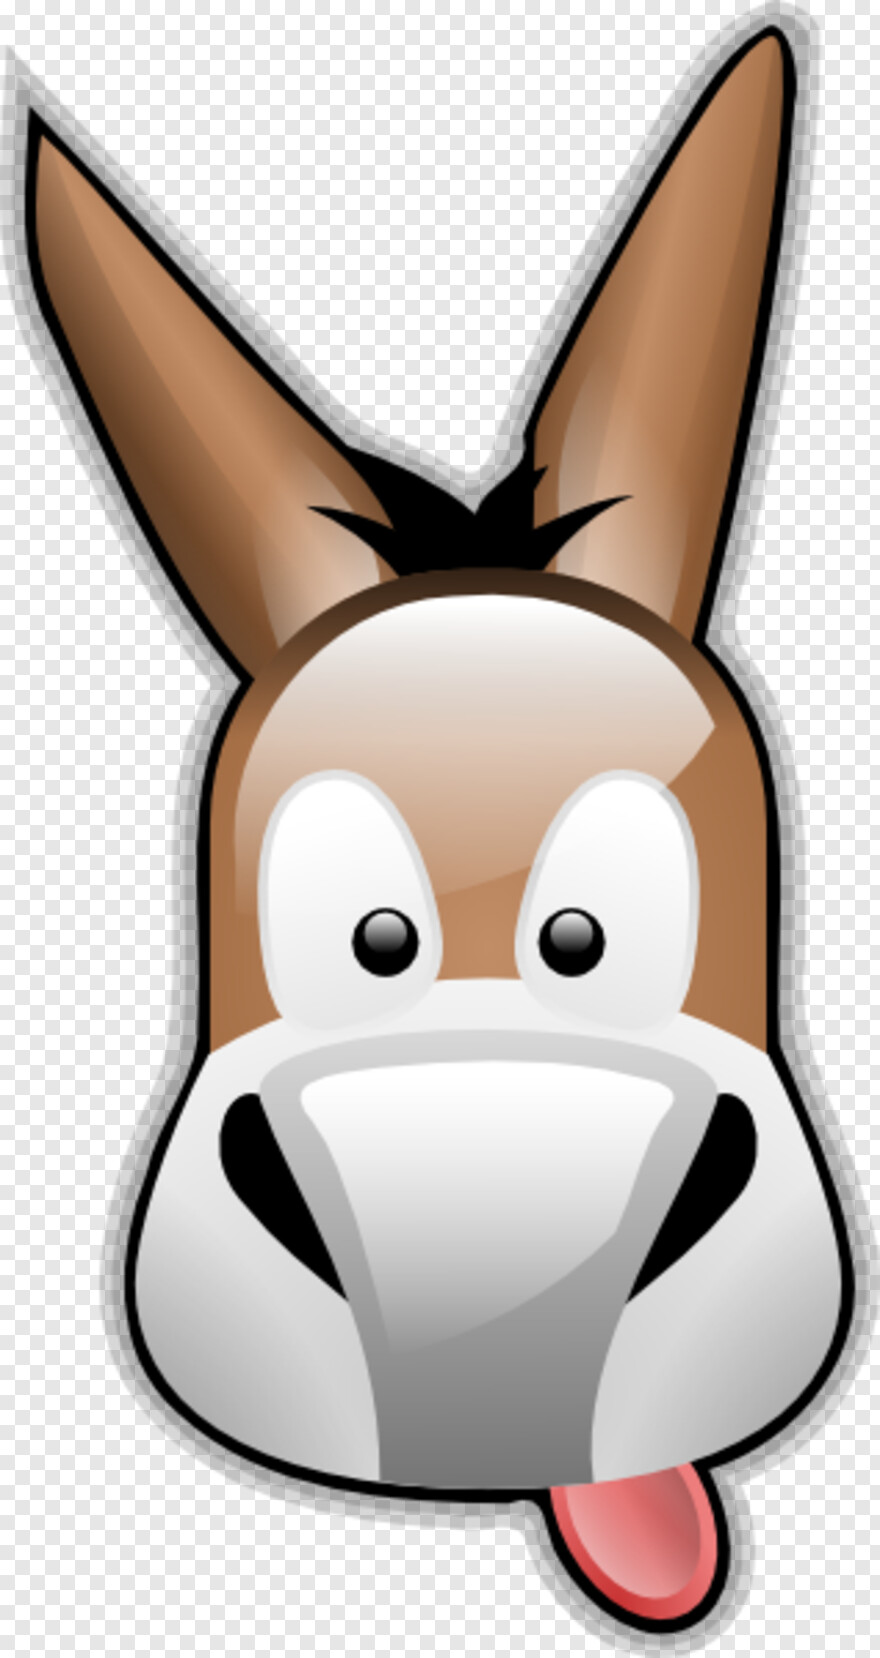 donkey # 891901